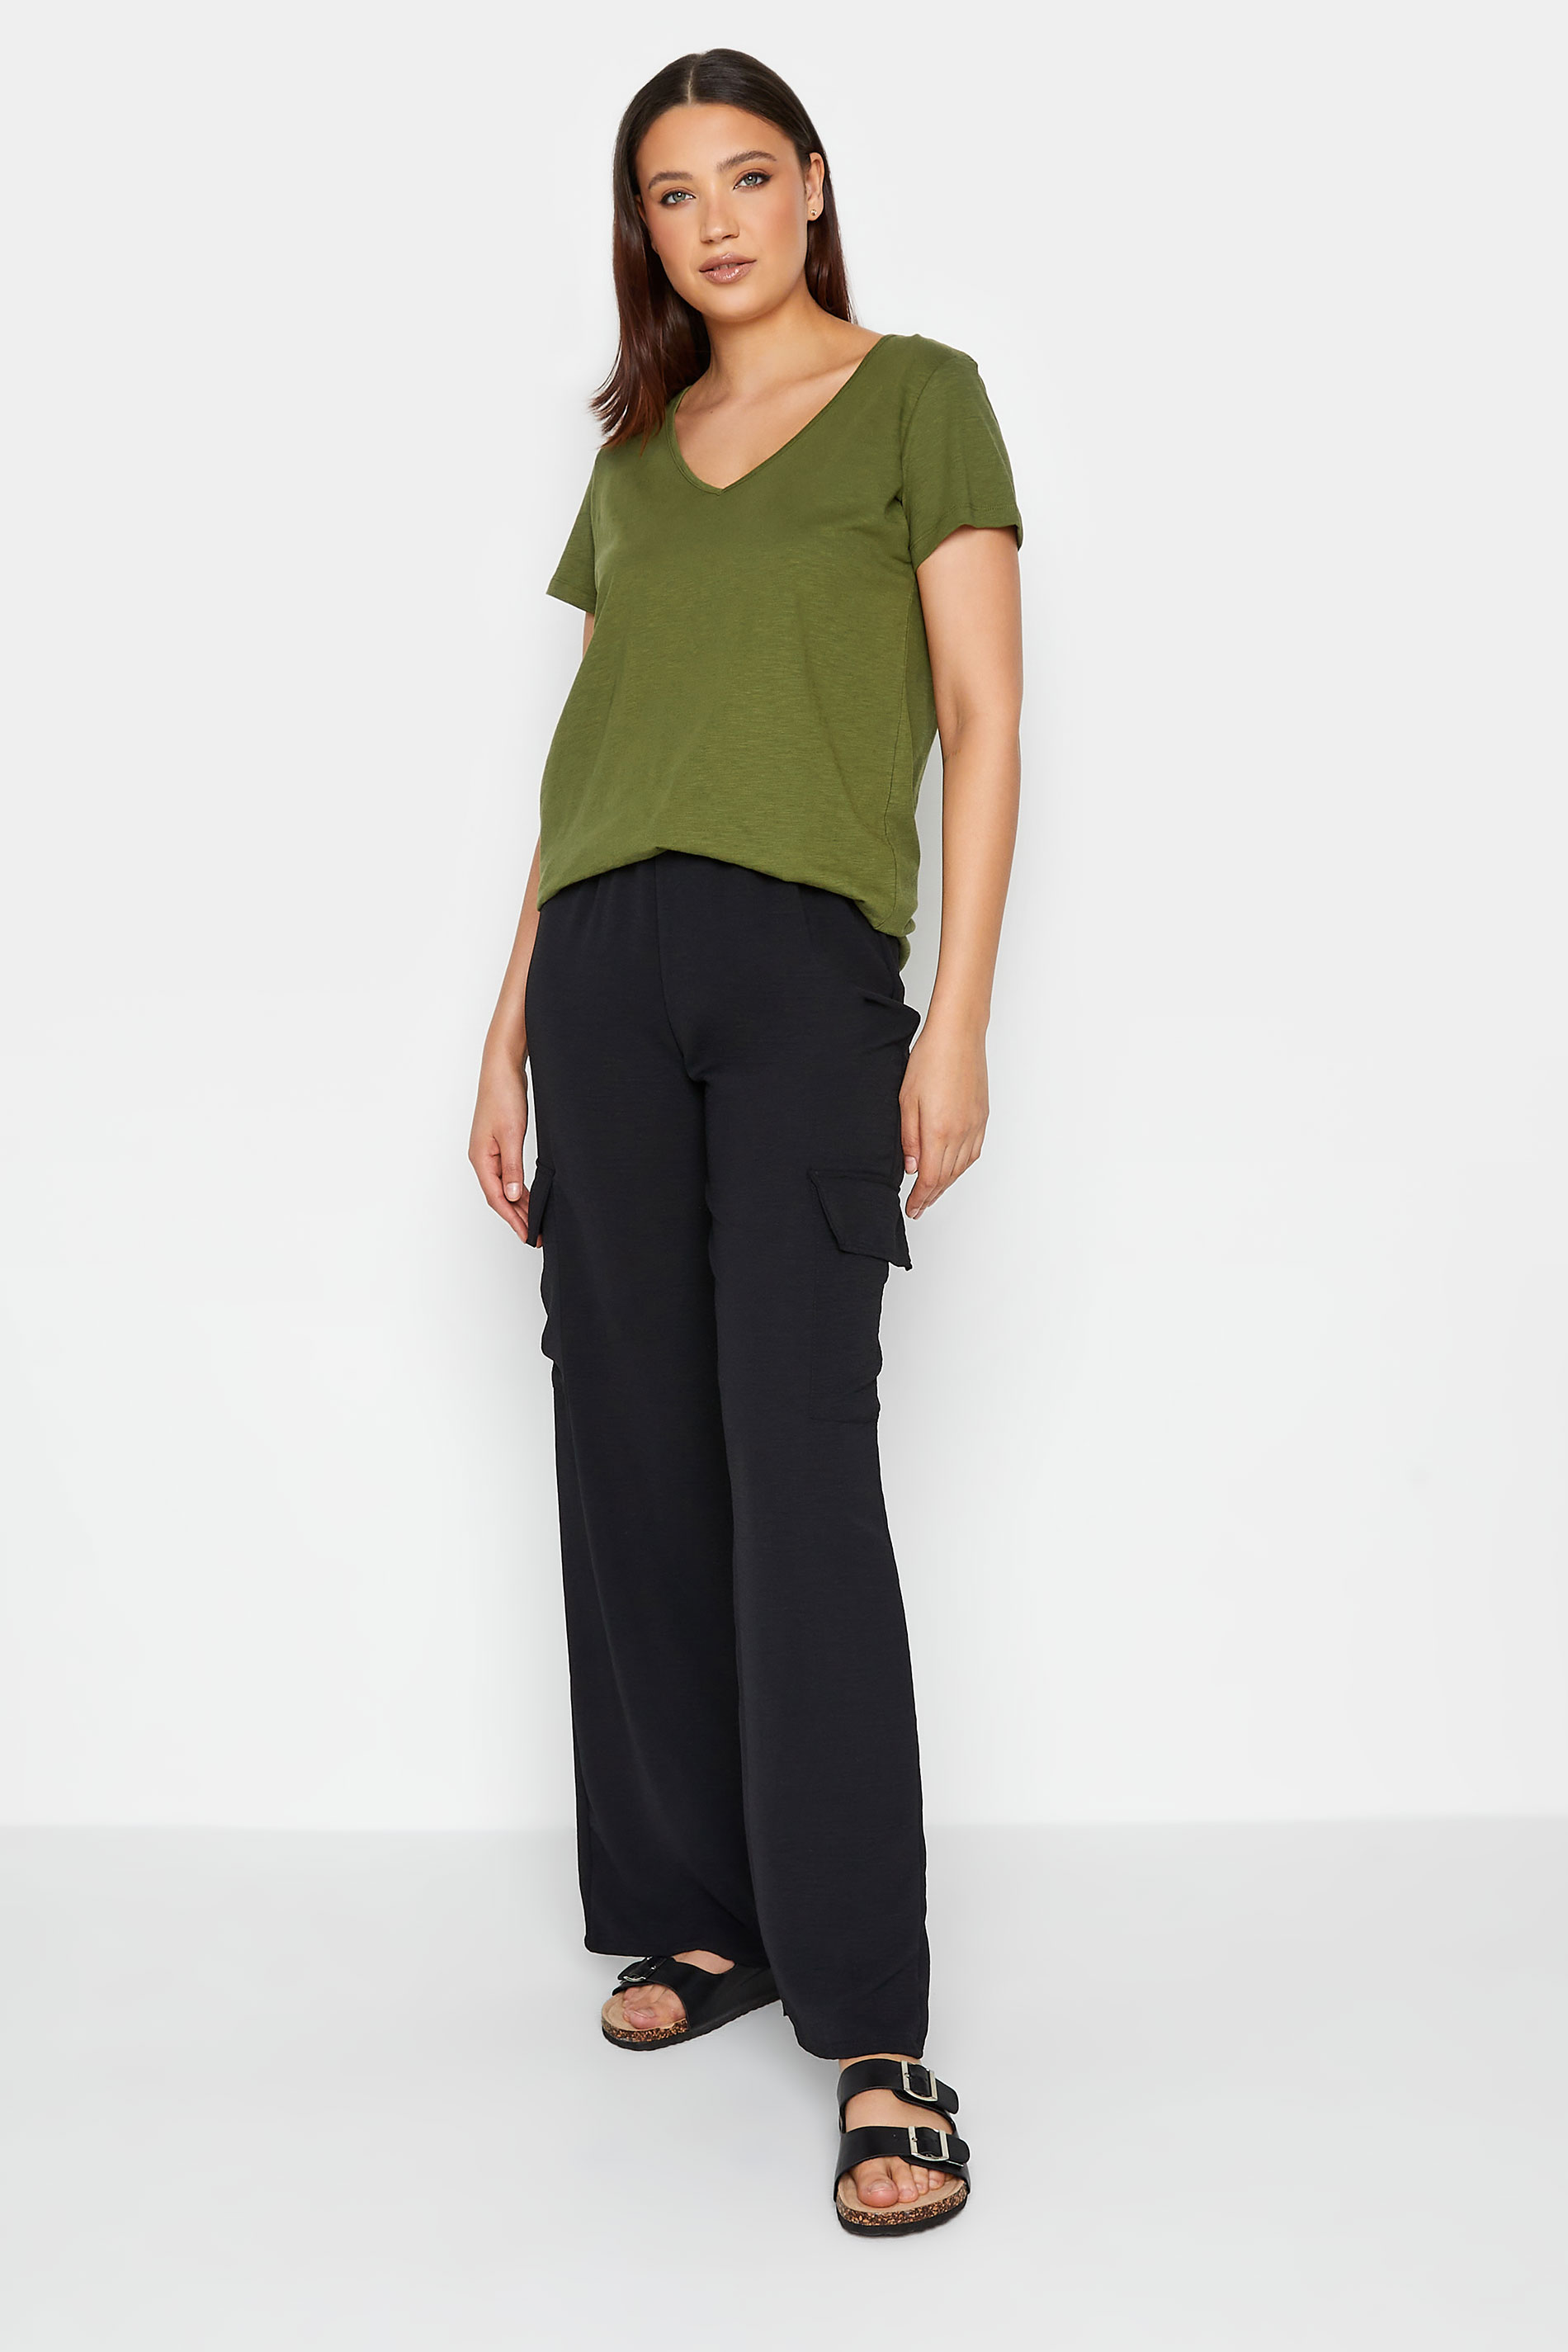 LTS Tall Womens Khaki Green Short Sleeve T-Shirt | Long Tall Sally  2